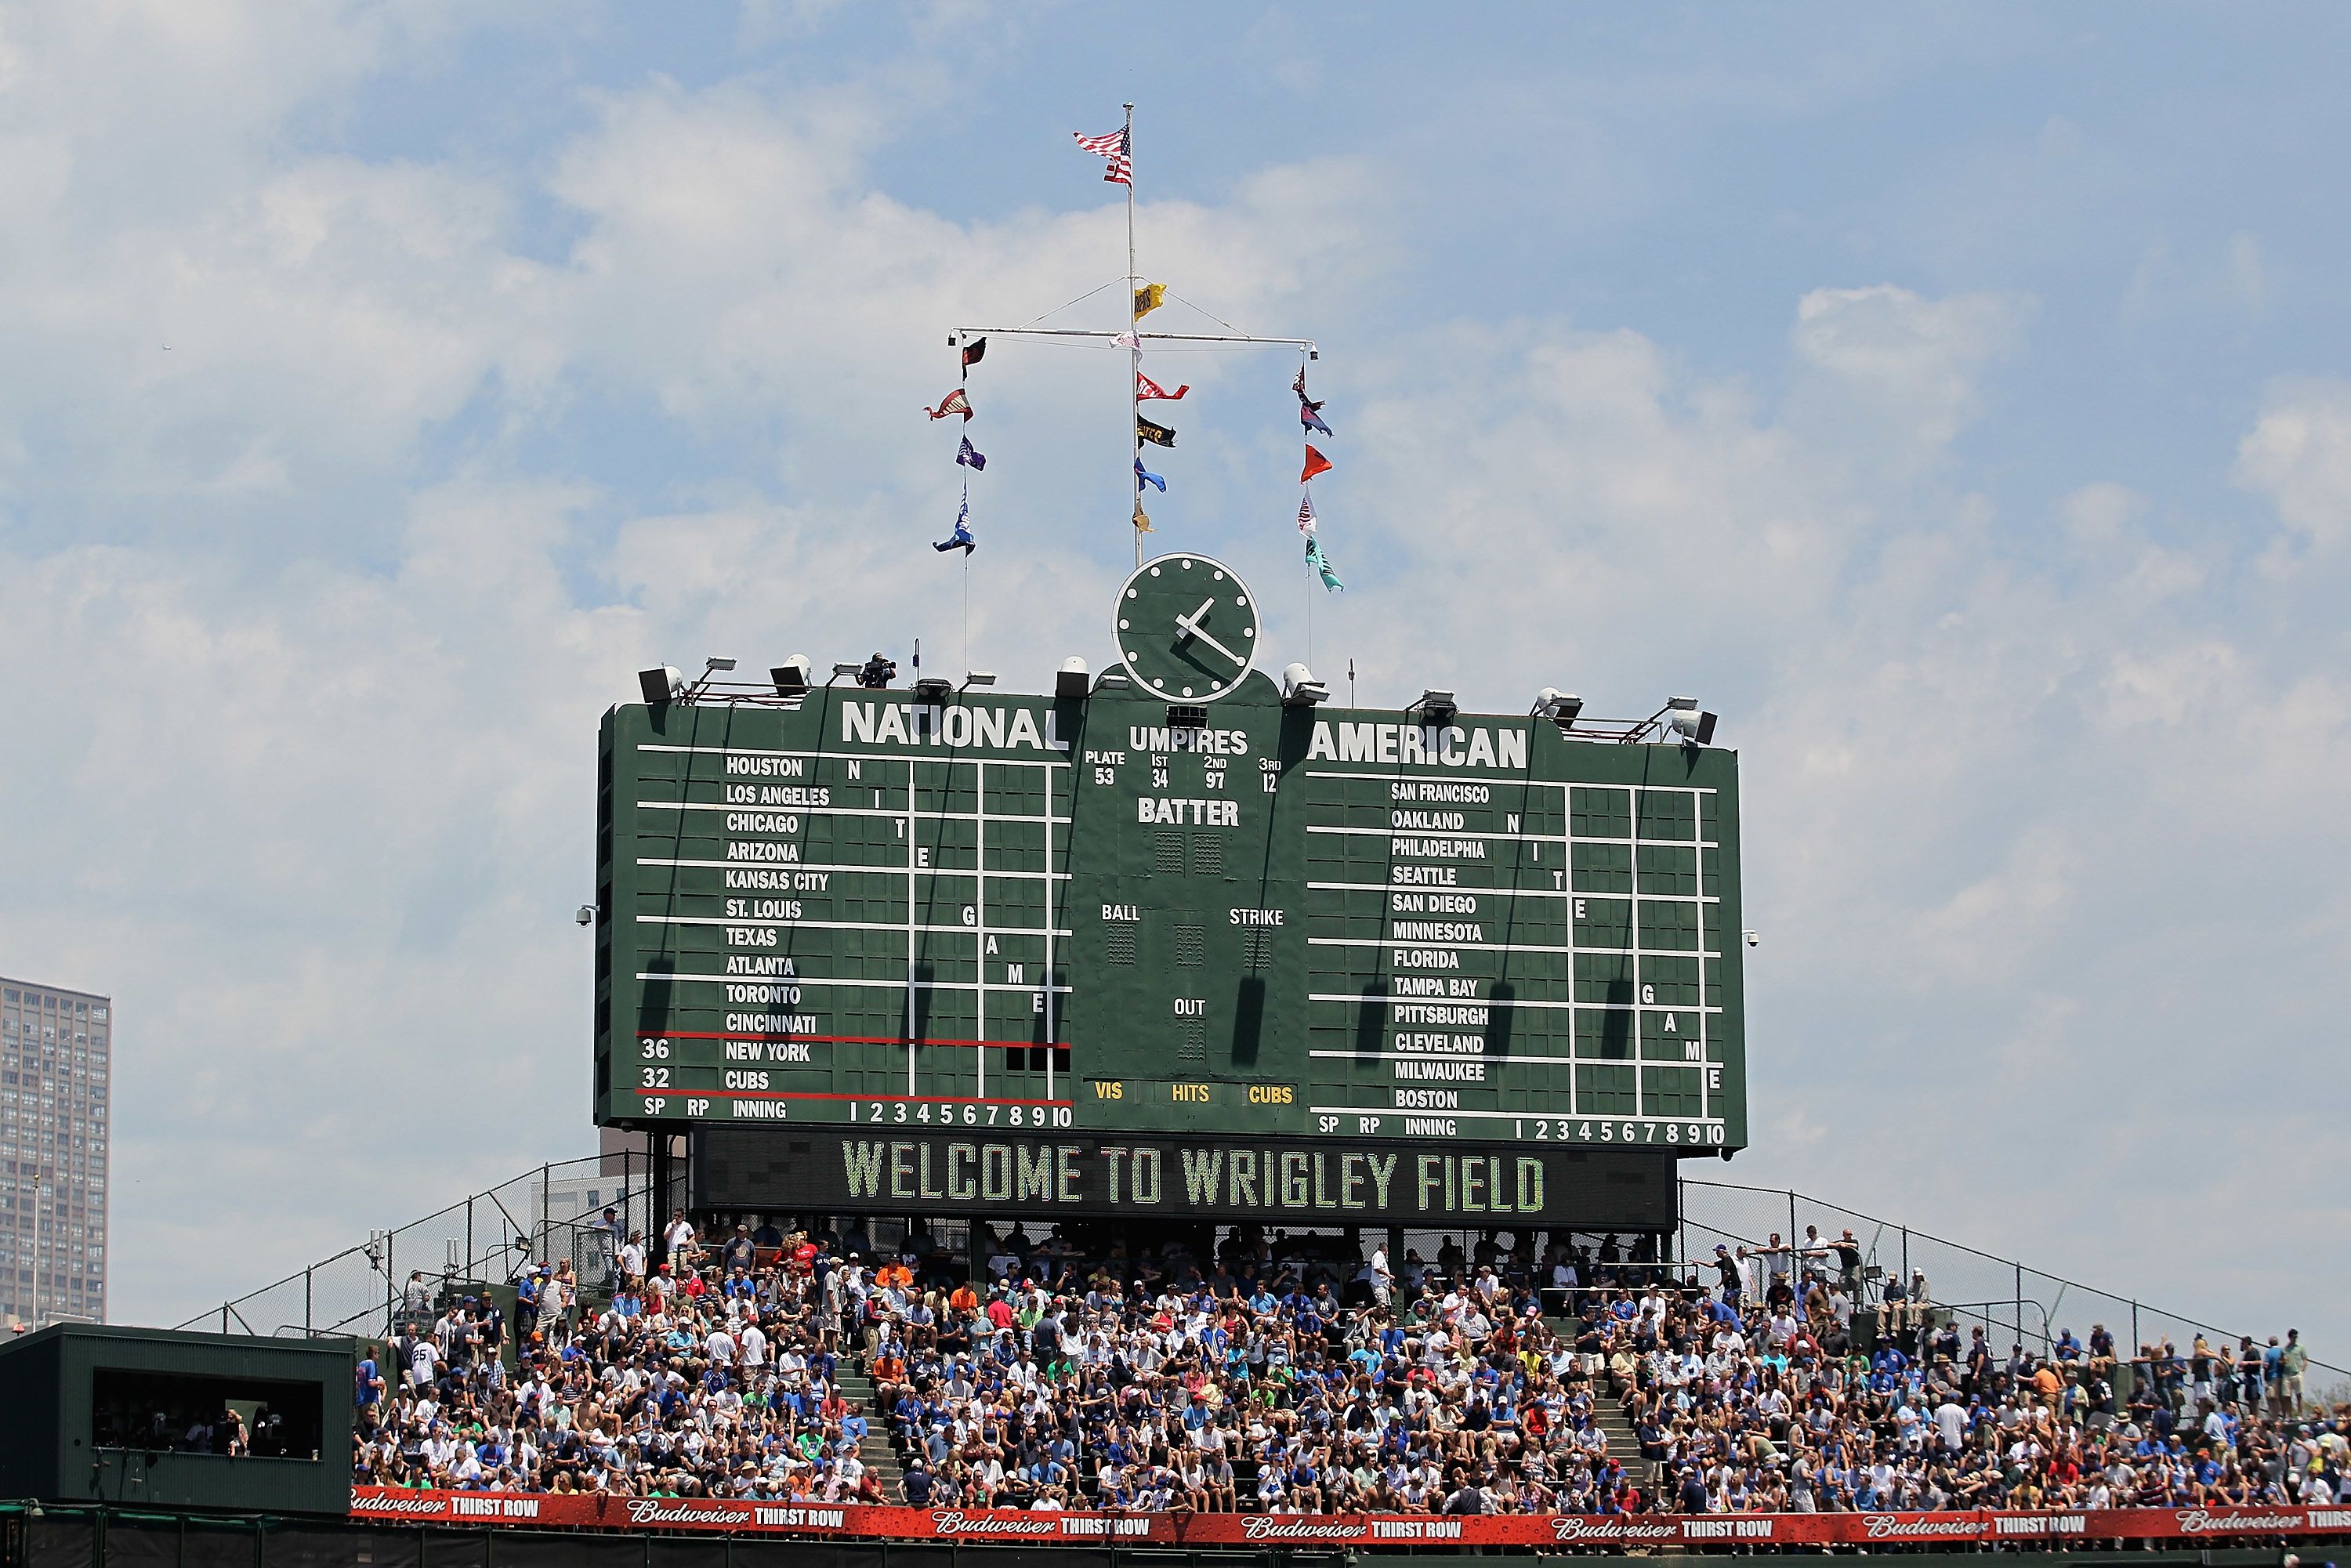 Wrigley Field's historic scoreboard has seen it all